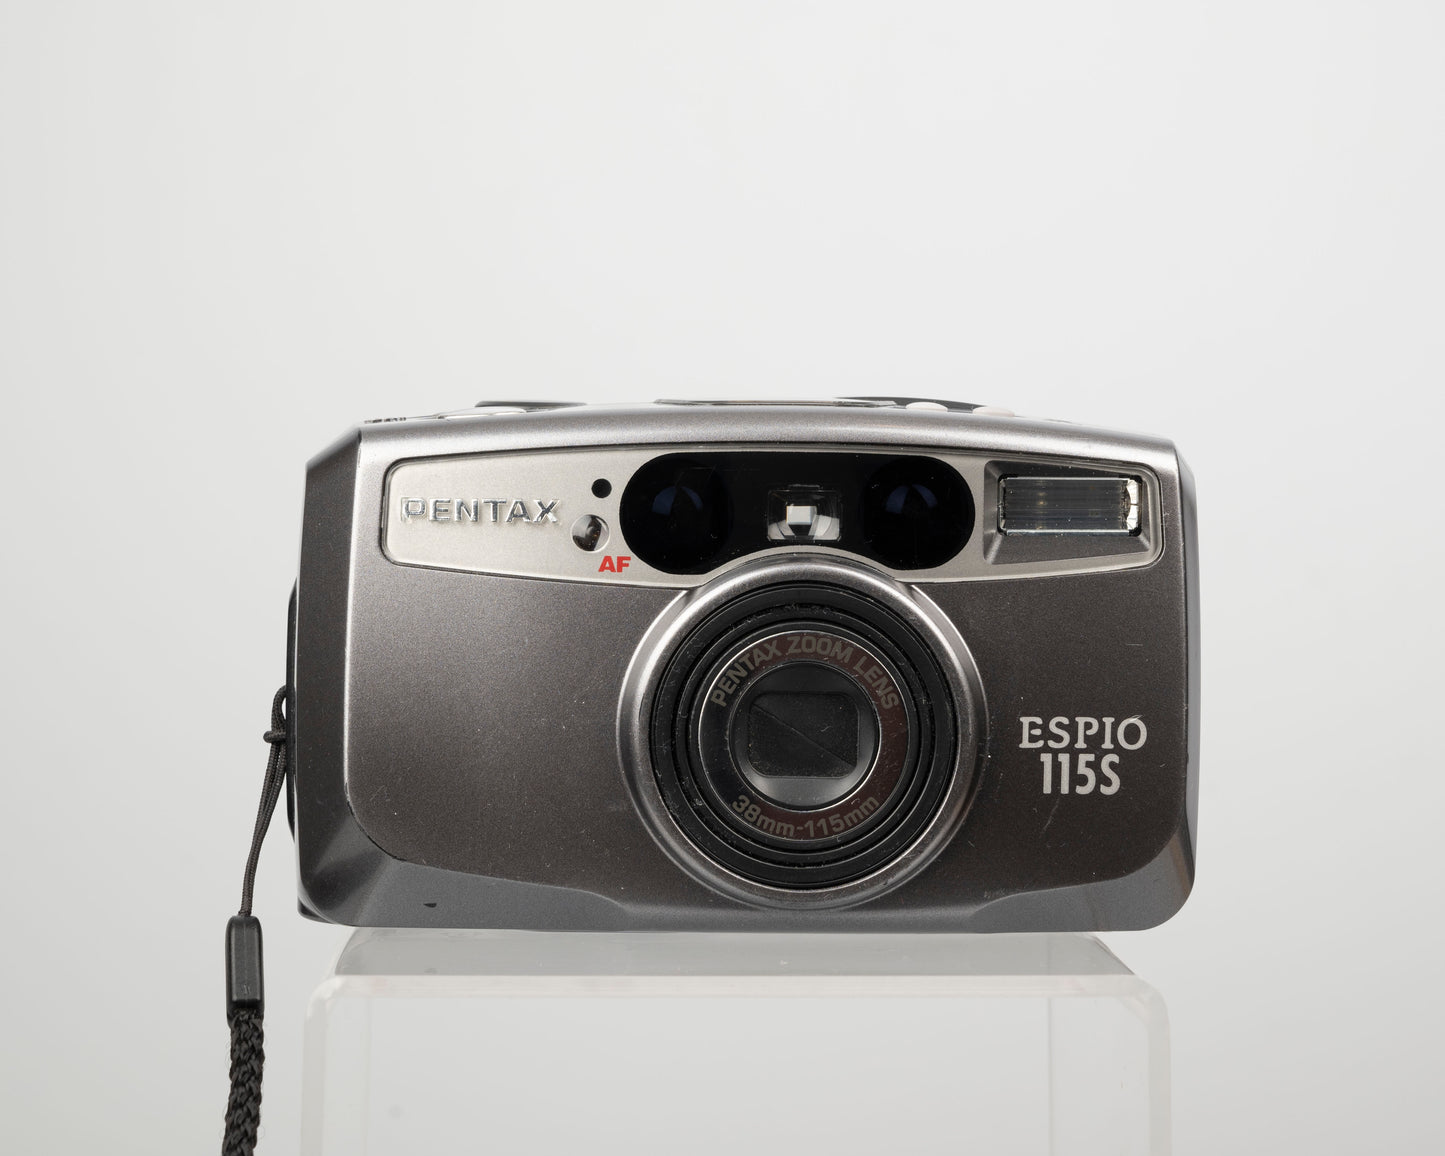 Pentax Espio 115S 35mm camera w/ case (serial 5536655)